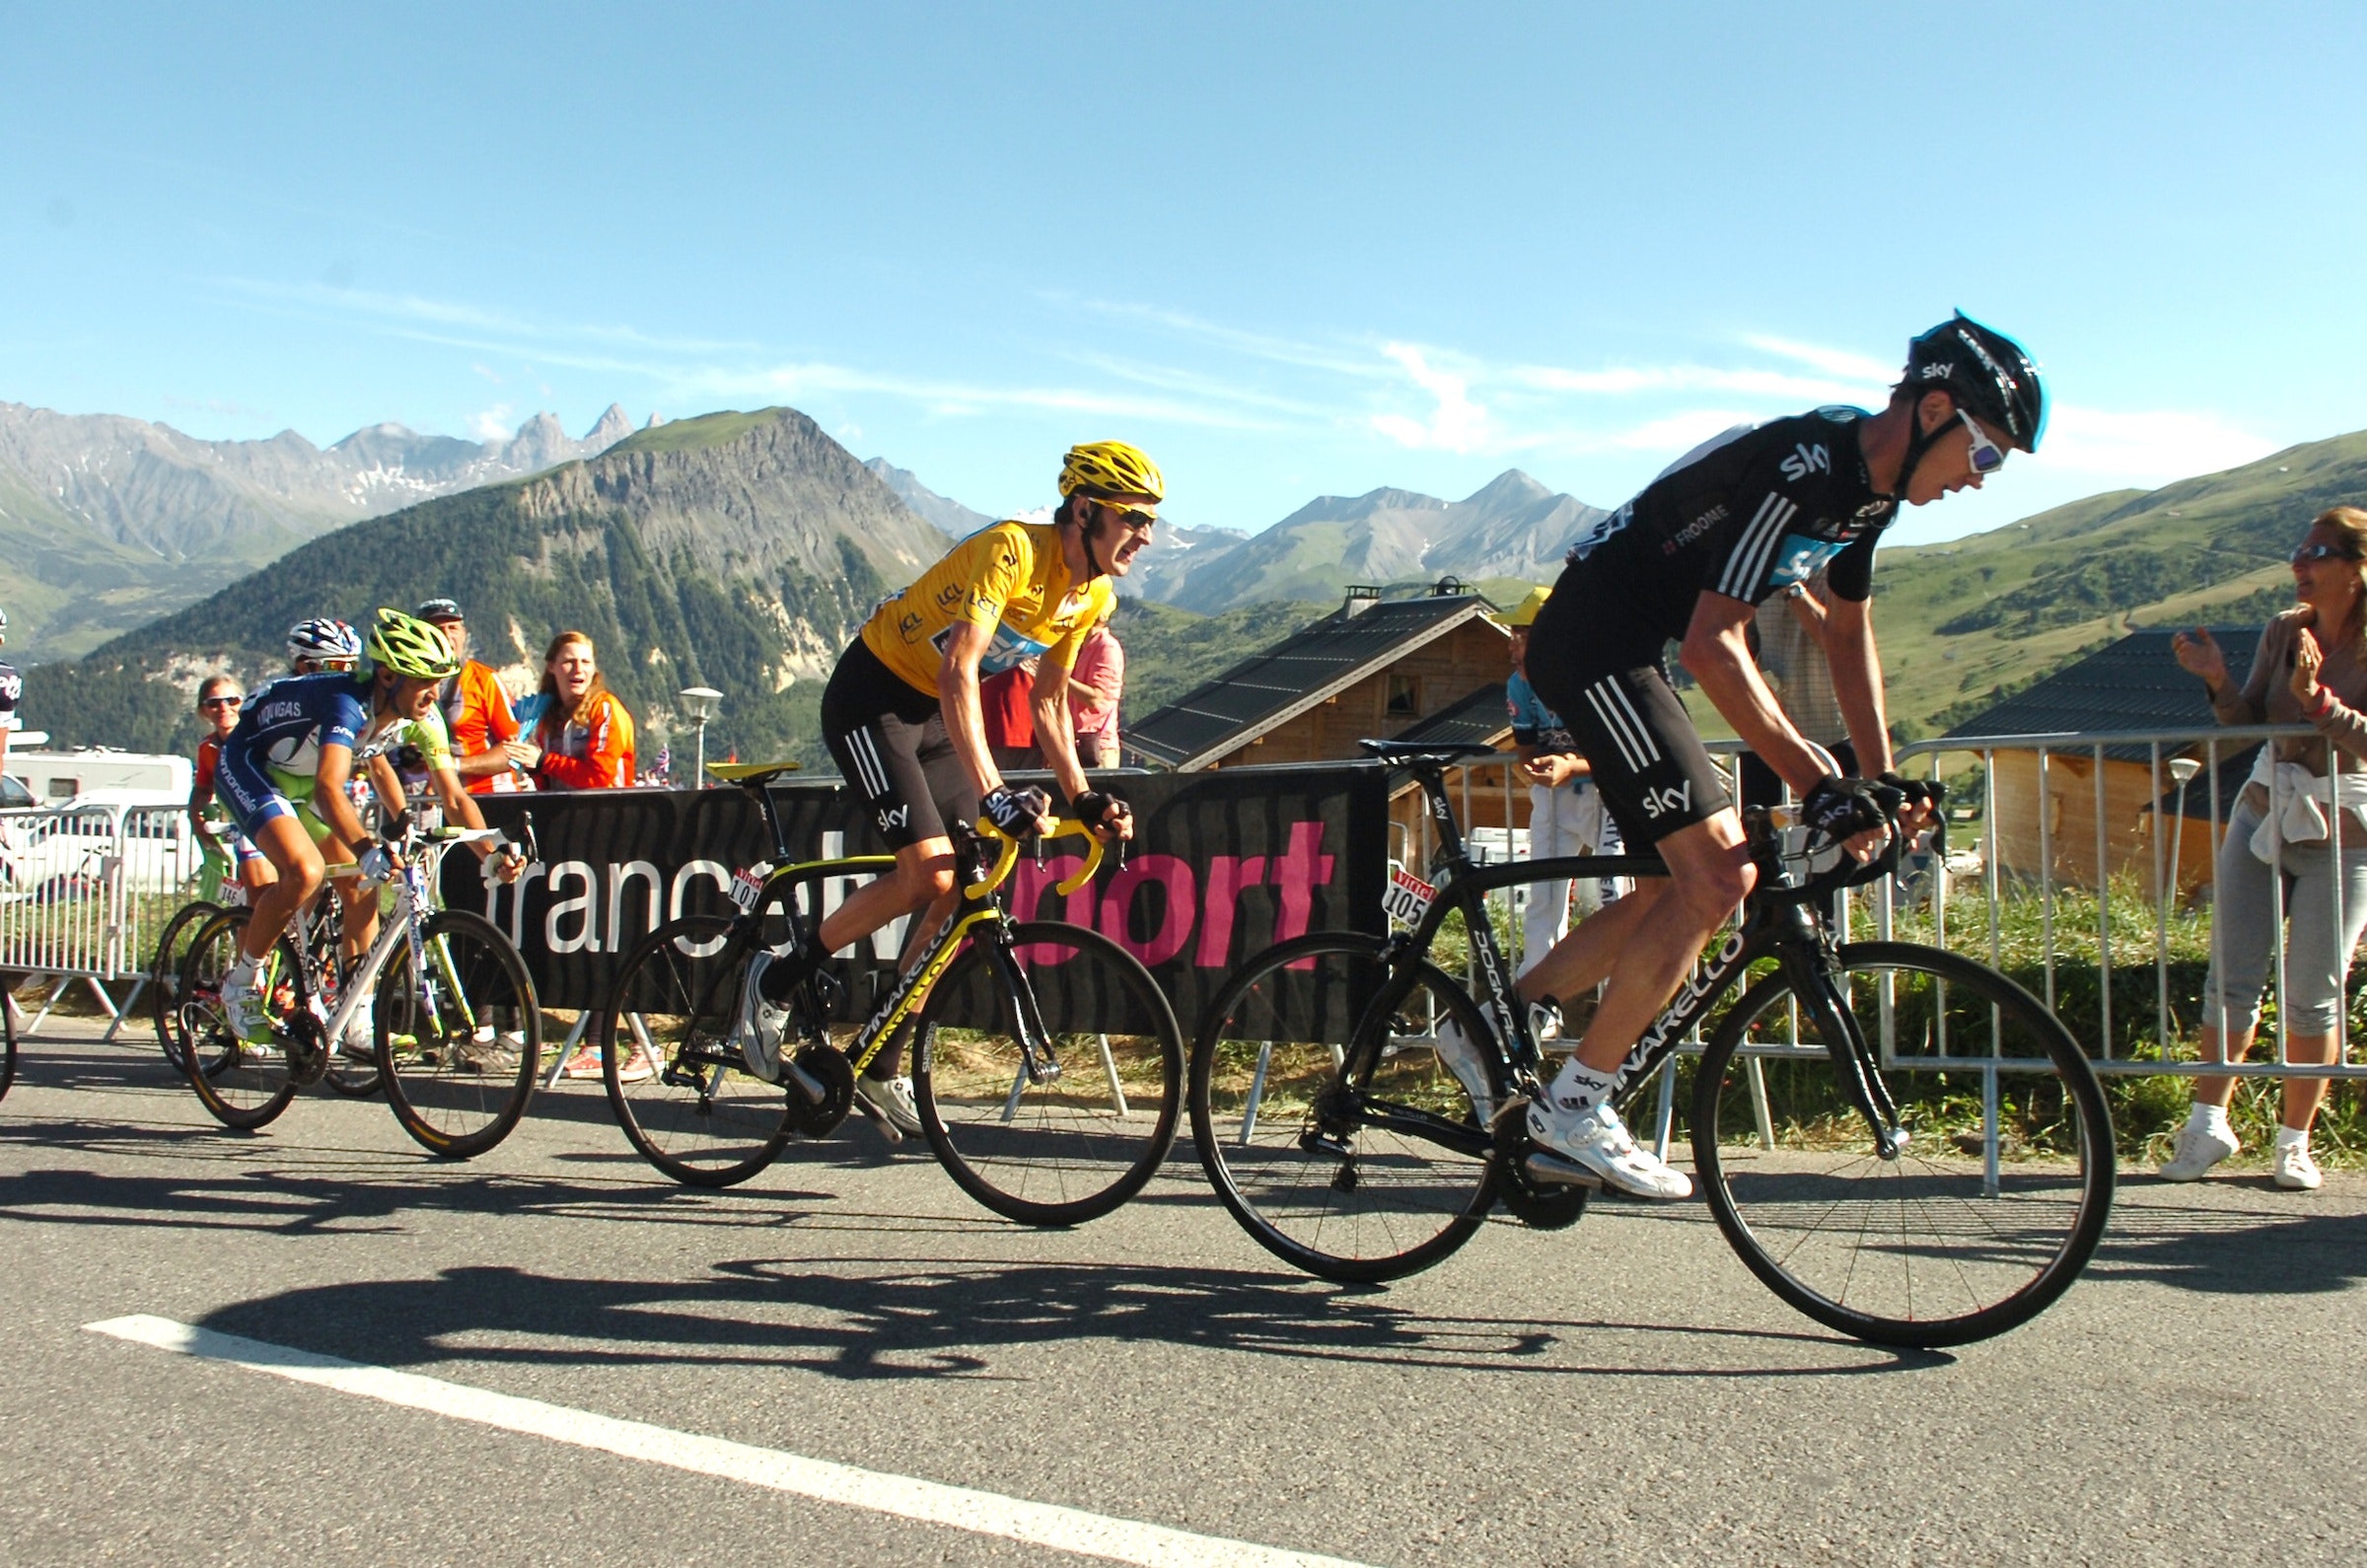 Chris Froome, Bradley Wiggins, Tour de France 2012, stage 11, Albertville - La Toussuire, pic: ©Stefano Sirotti